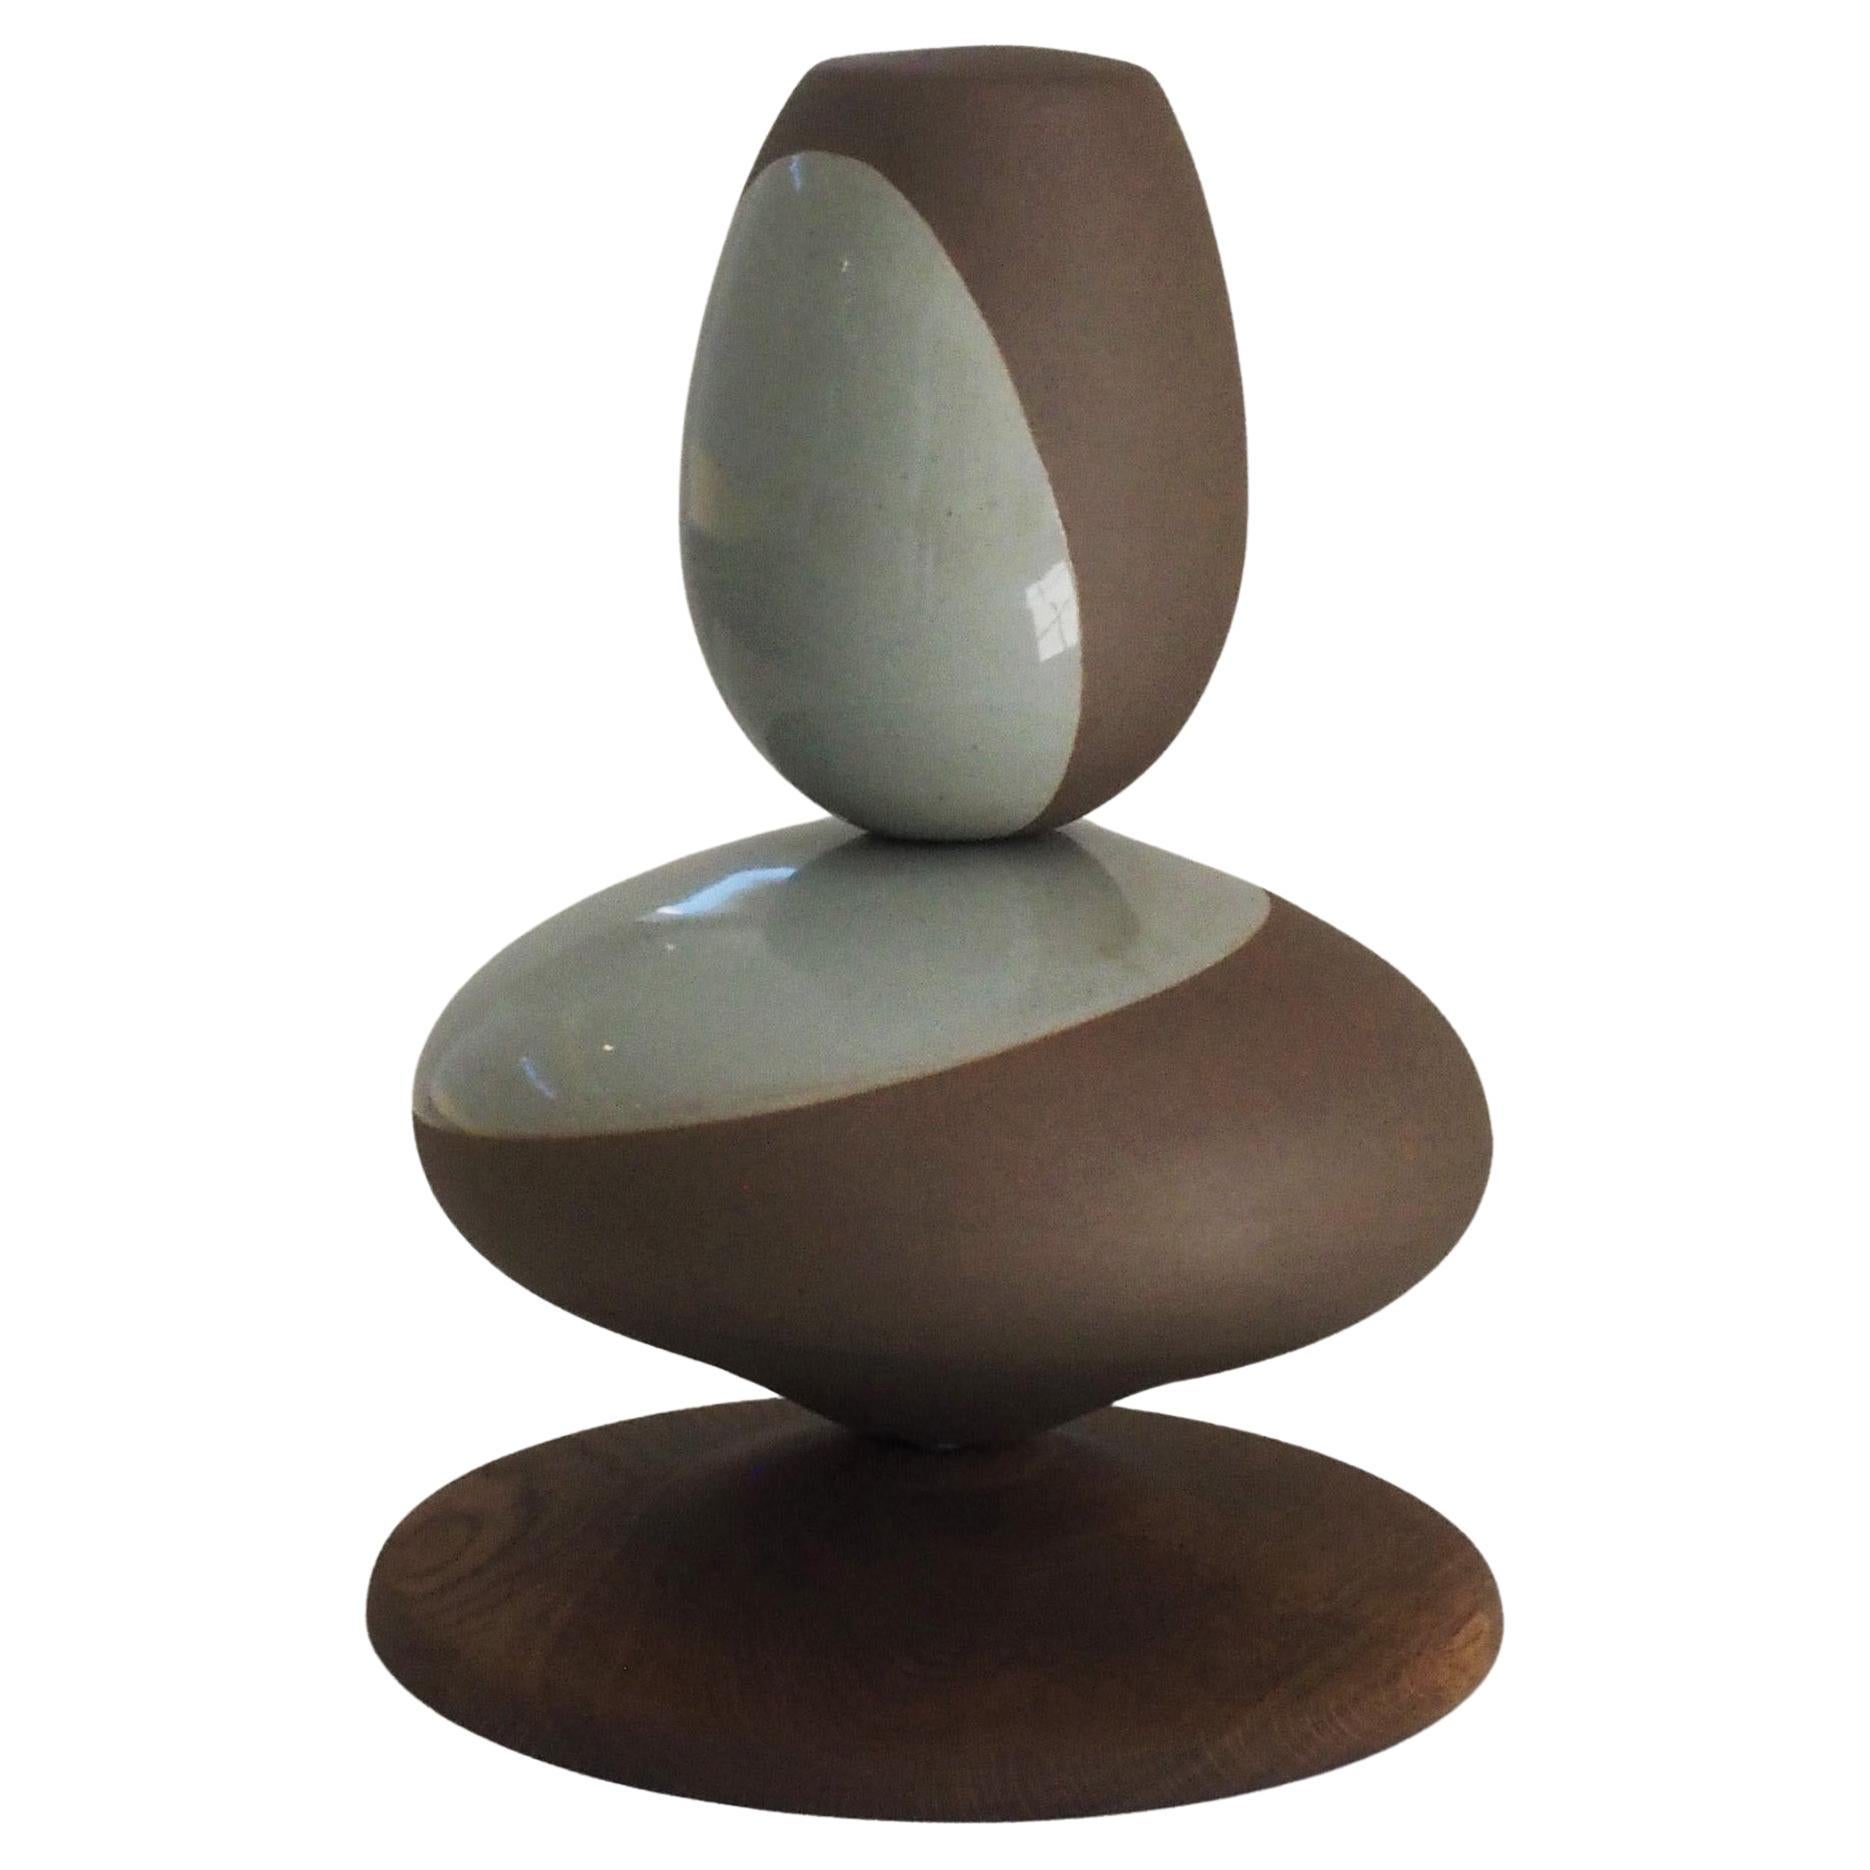 Contemporary Korean Ceramic, "Stack Sculpture 3.0" by Soo Joo